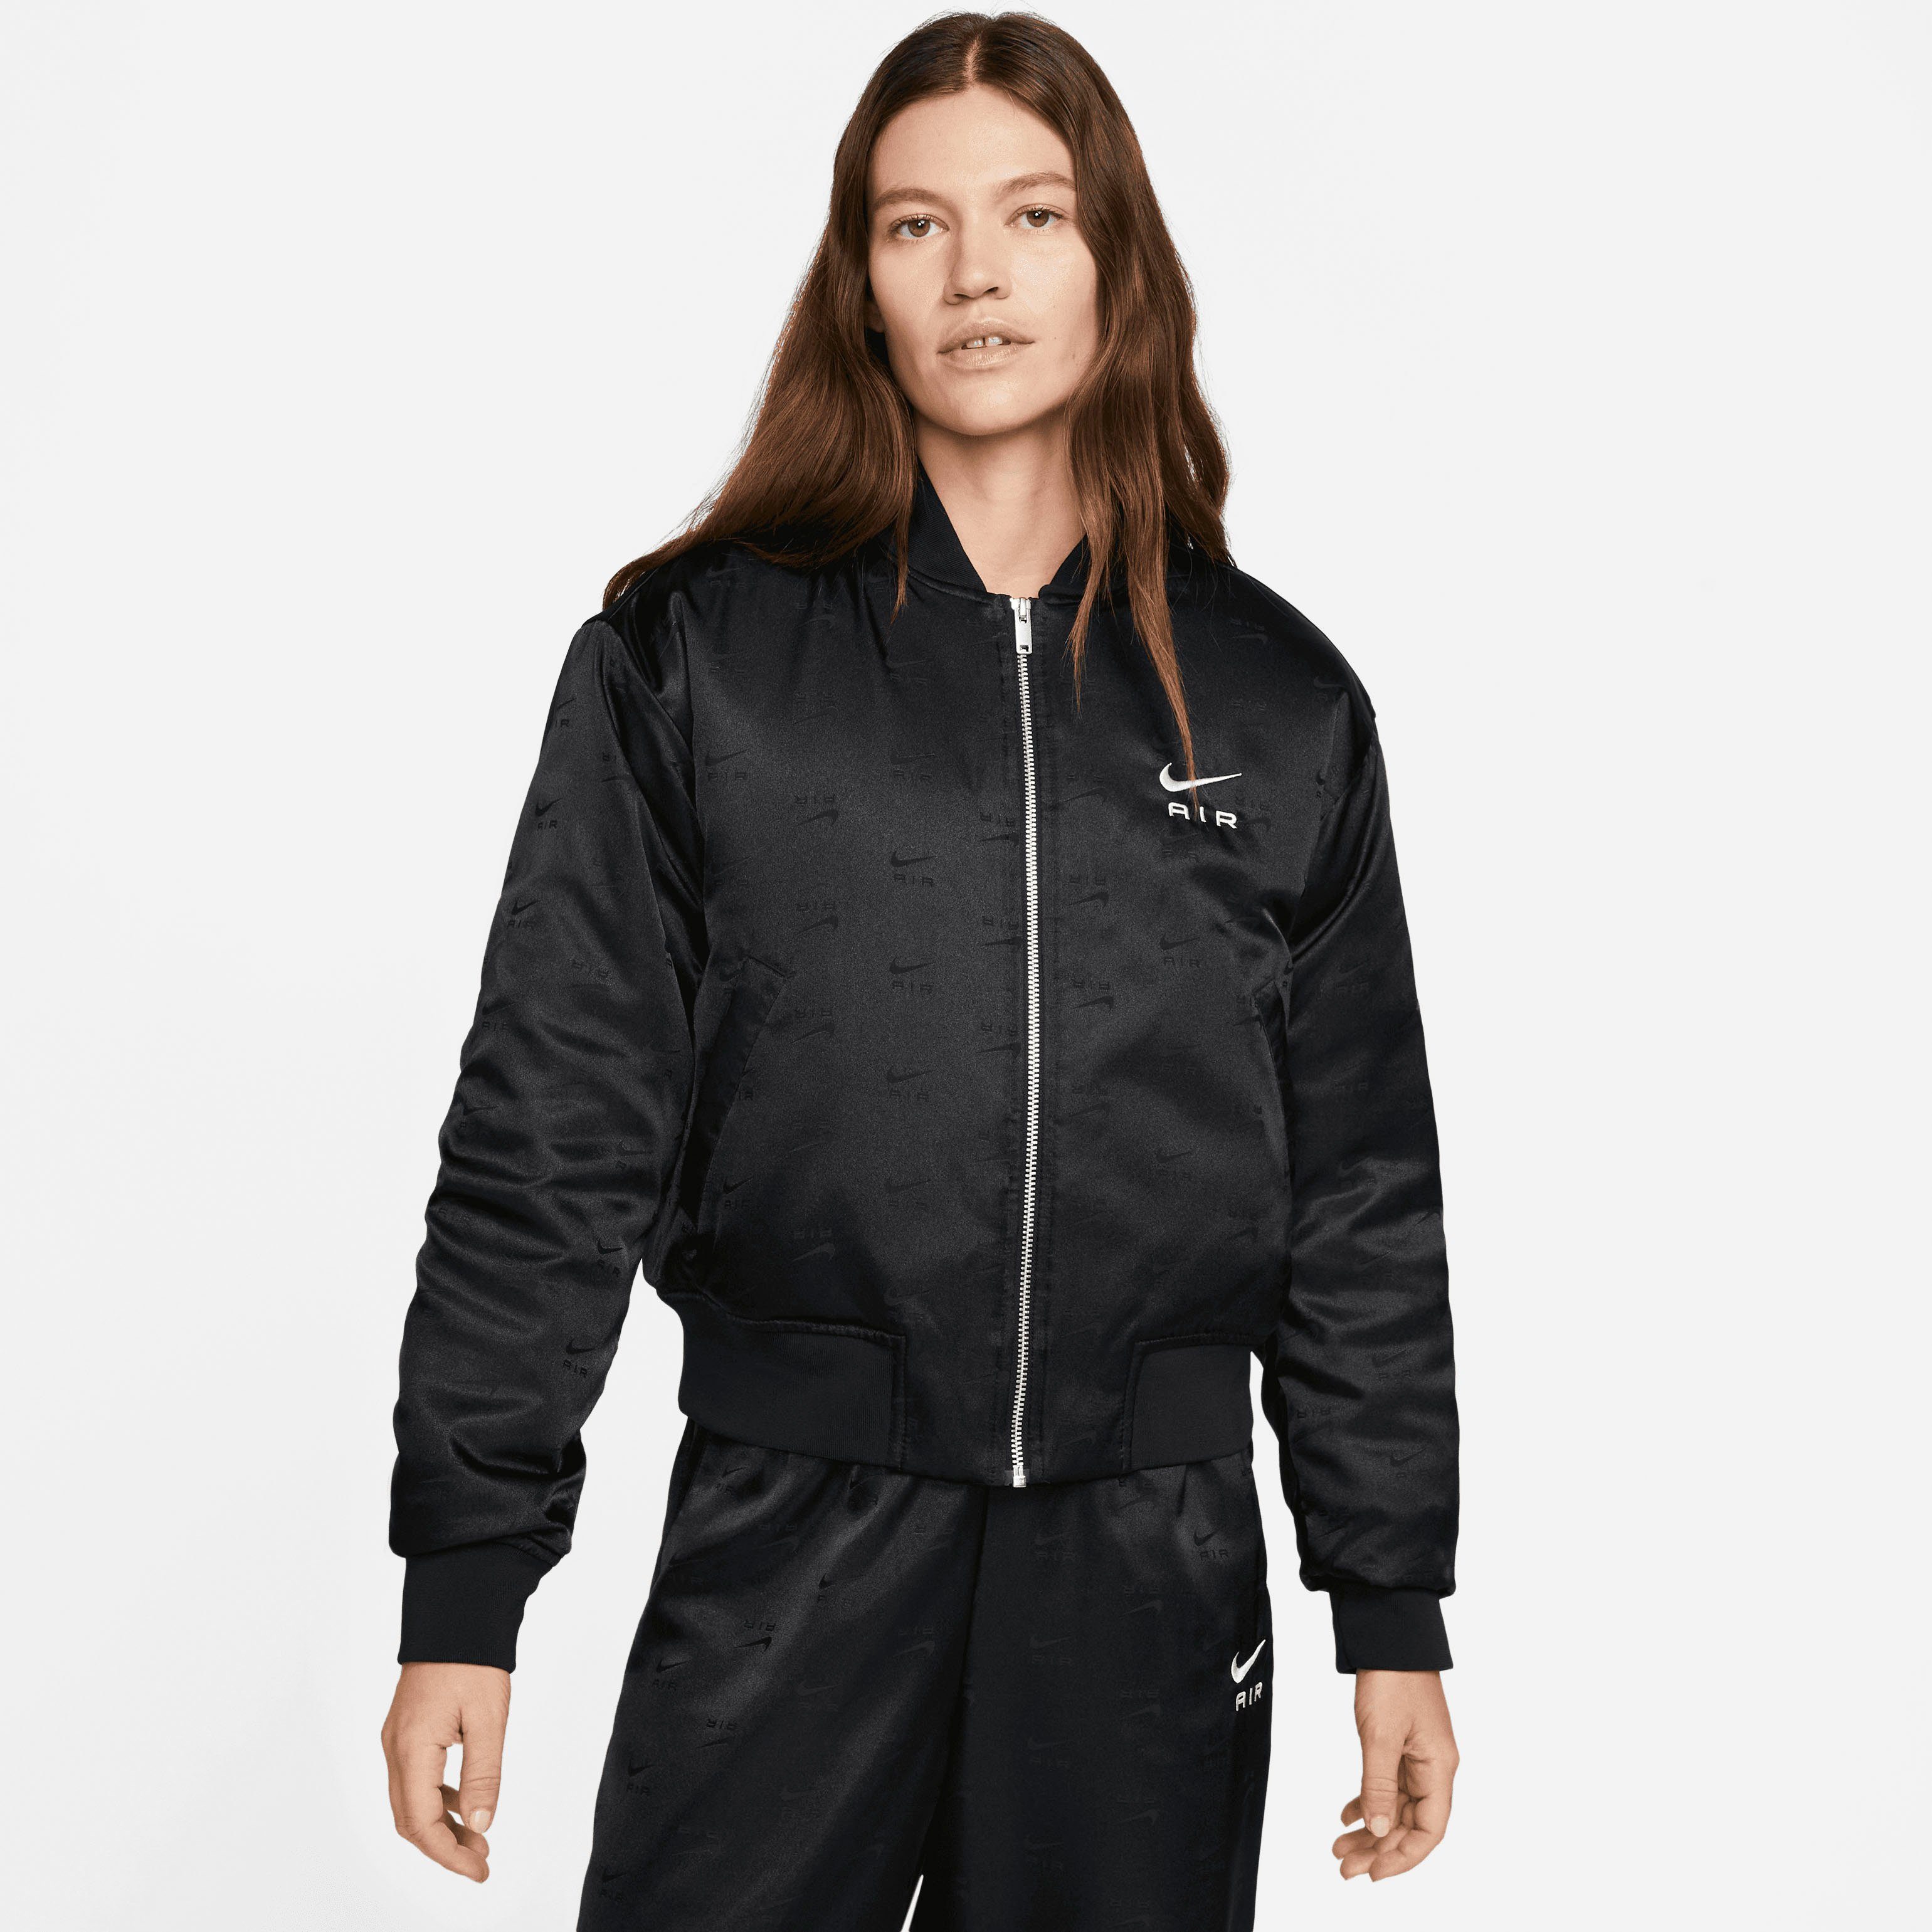 Sportswear Blouson Nike Women's Bomber Air Jacket